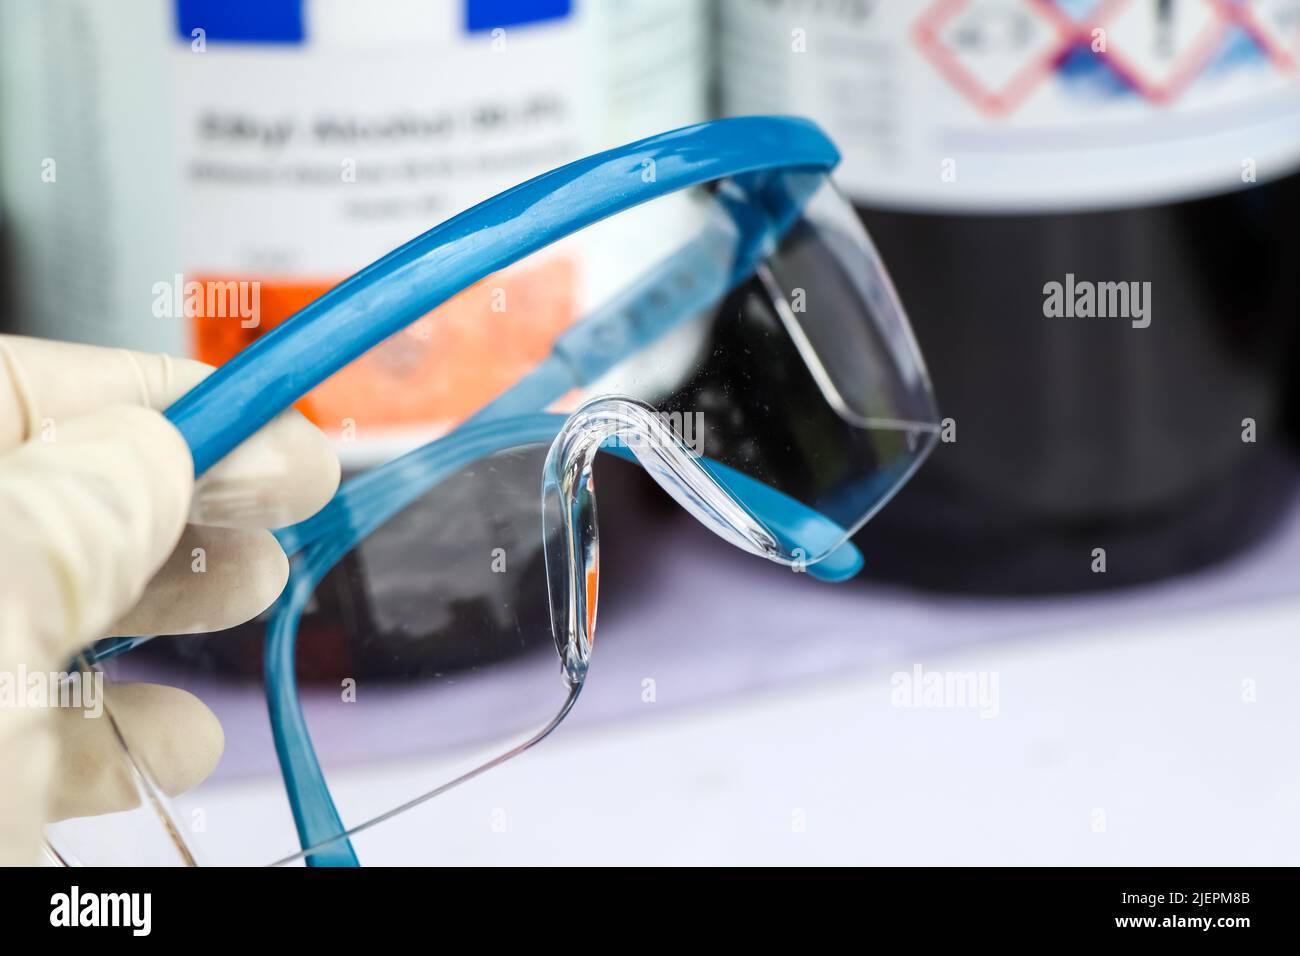 Brillen können verhindern, dass Chemikalien im Labor oder bei der Arbeit in die Augen gelangen Stockfoto